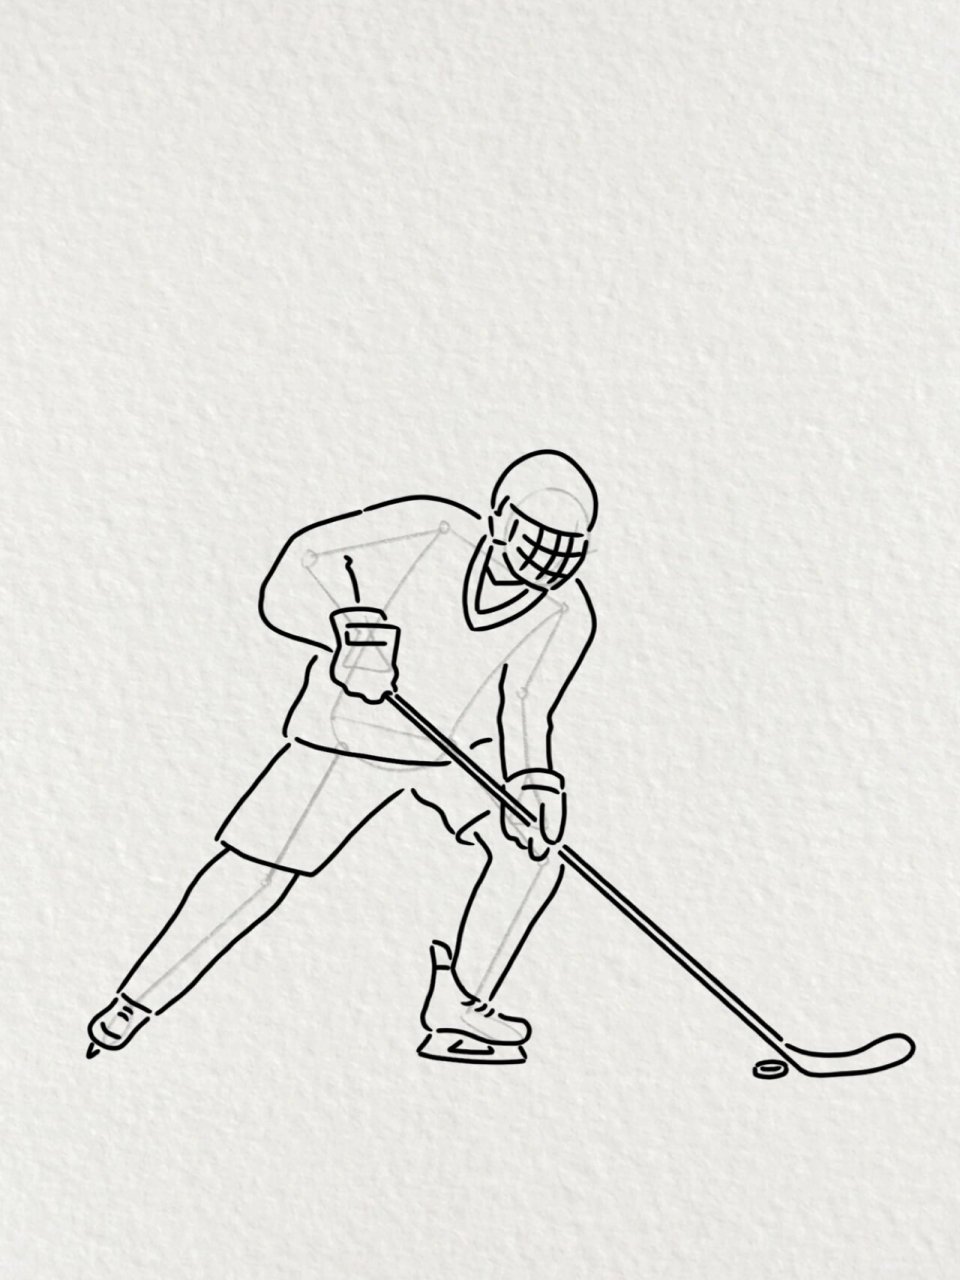 冰球运动简笔画小人图片